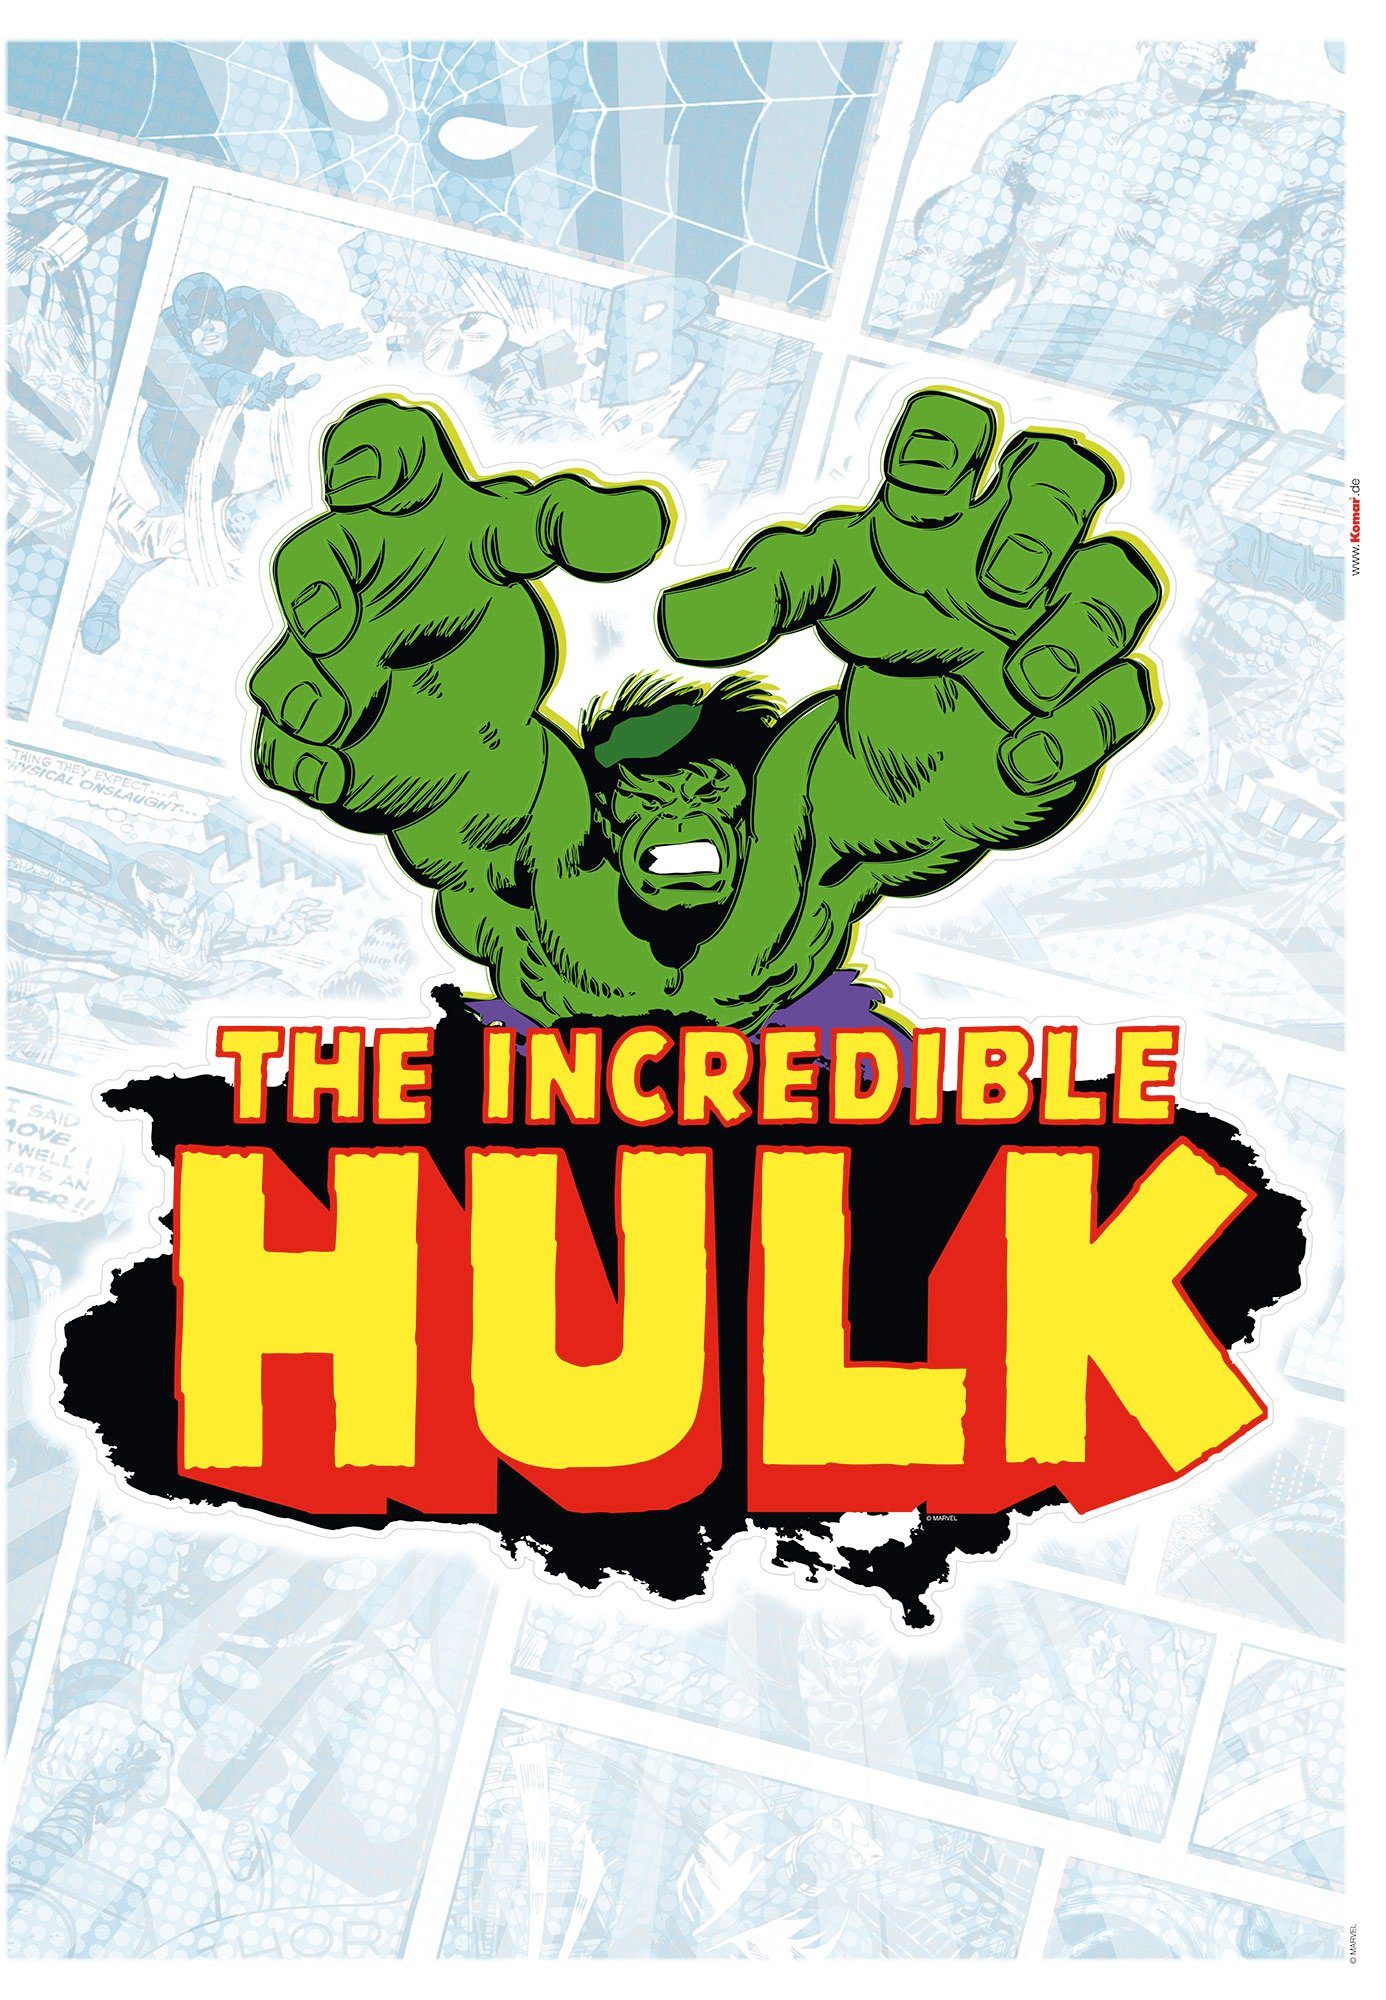 (Breite Komar Classic selbstklebendes Hulk cm x Höhe), St), (1 Comic 50x70 Wandtattoo Wandtattoo